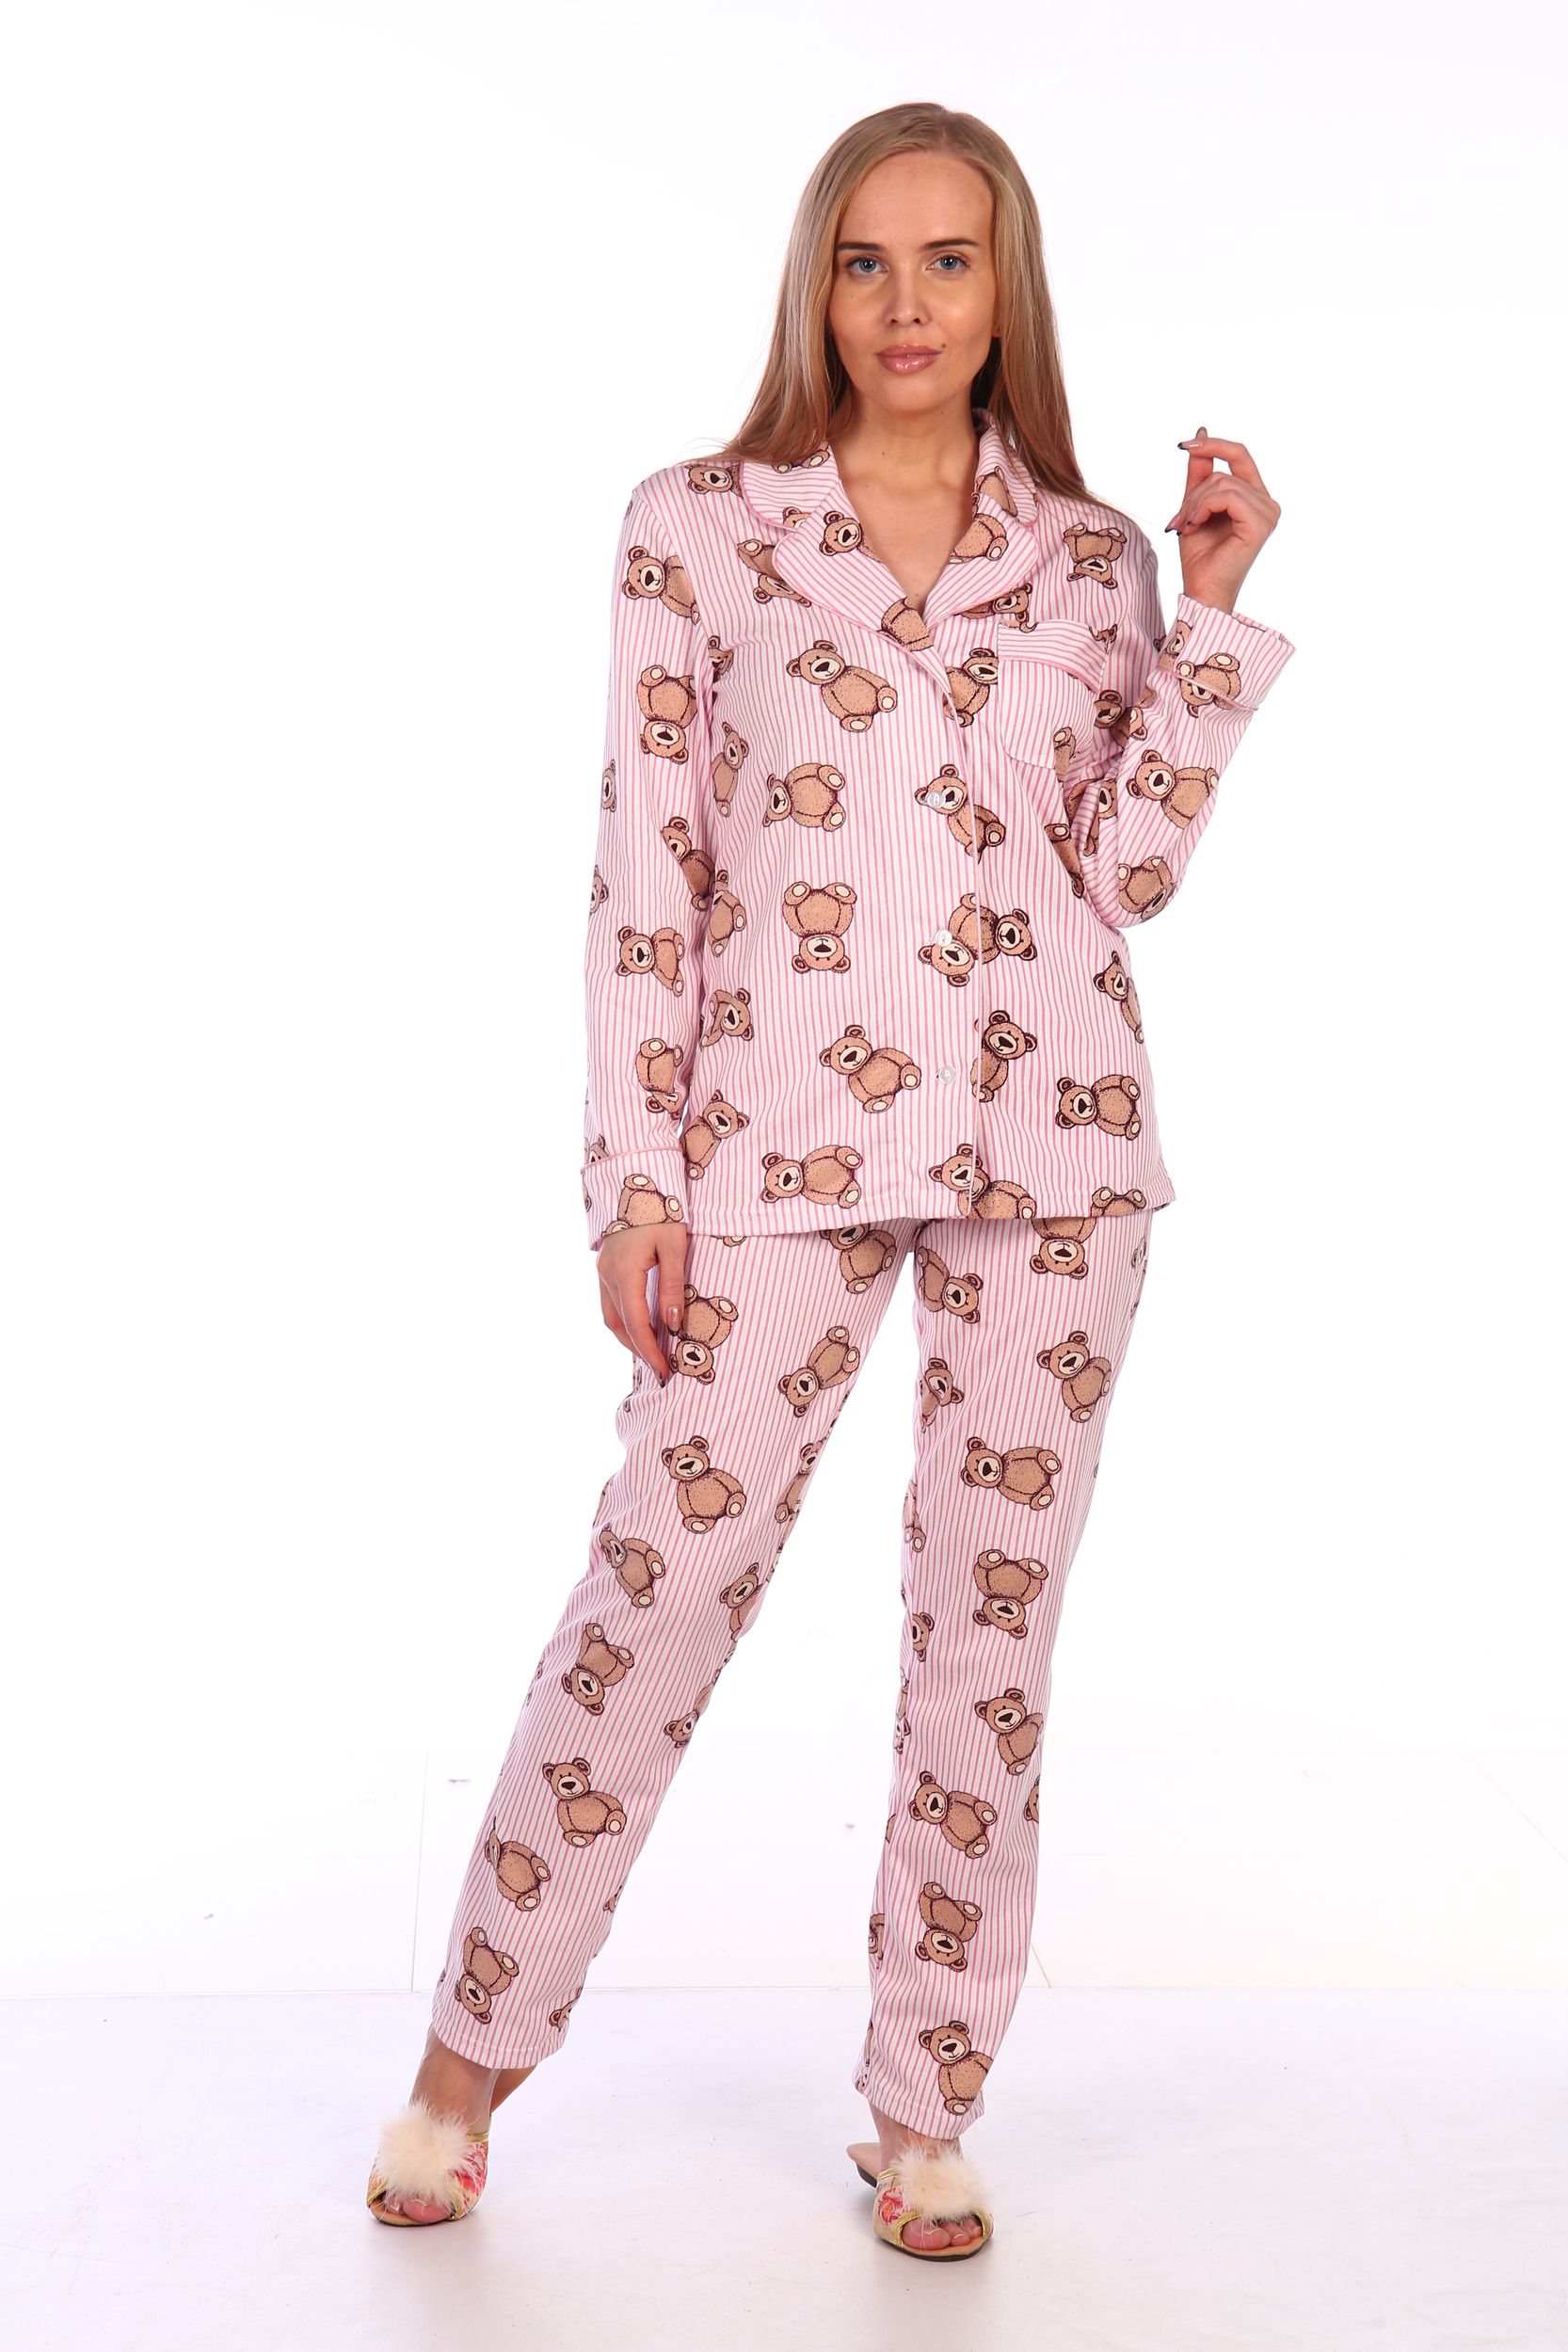 Продажа пижам. Пижама женская (модель FS 2253). Пижамы на вайлдберриз. Валберис шелковые пижамы. Пижама женская вайлдбериес.